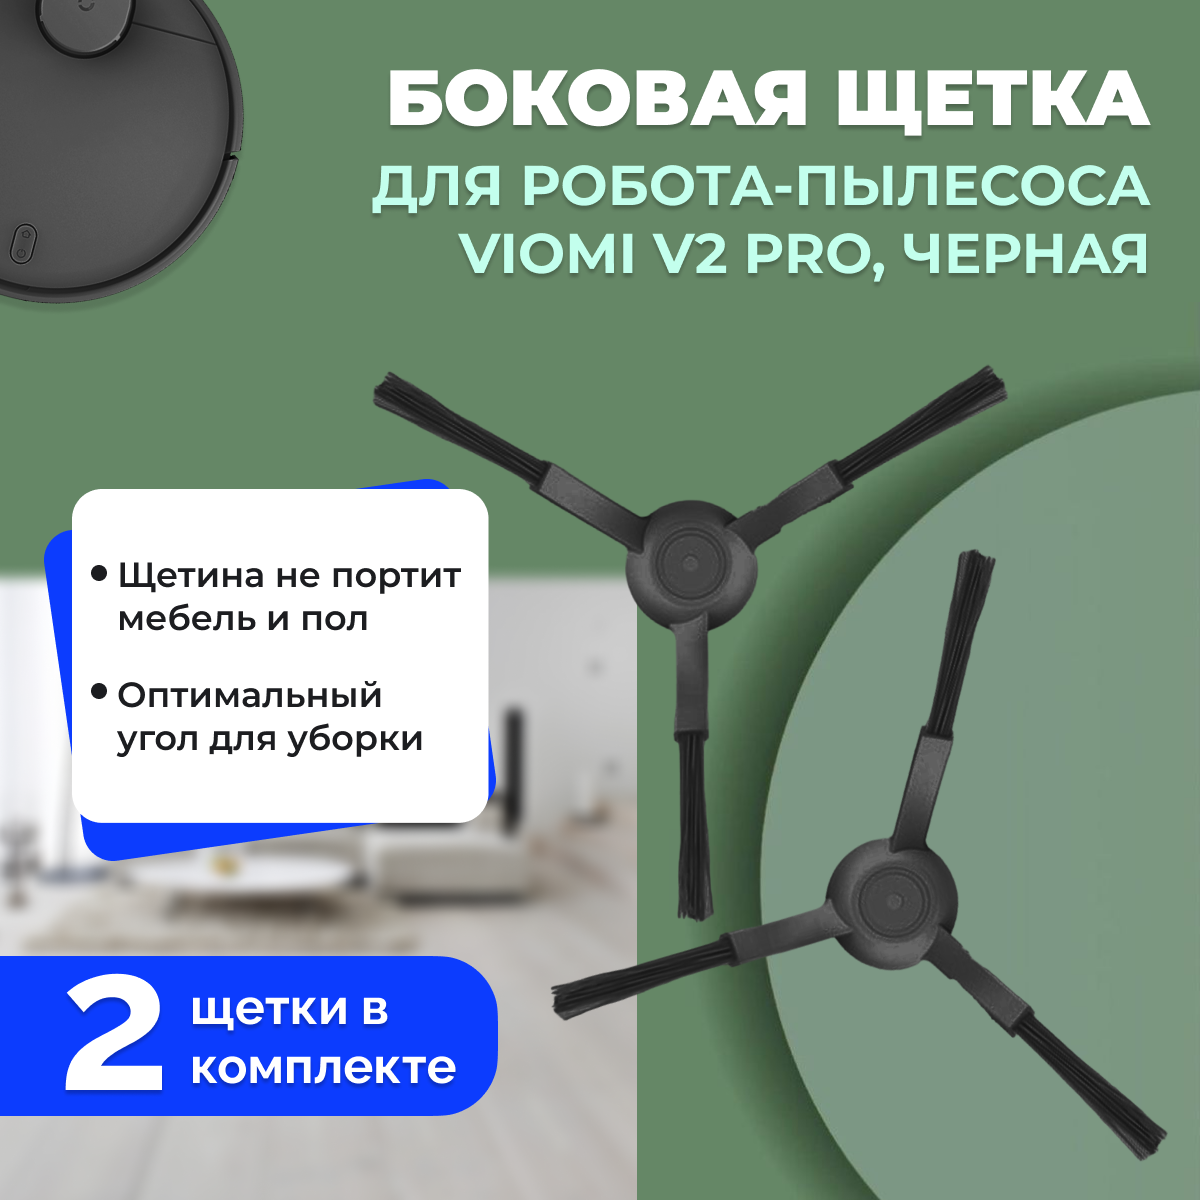 Боковые щетки для робота-пылесоса Viomi V2 Pro, черные, 2 штуки 558611